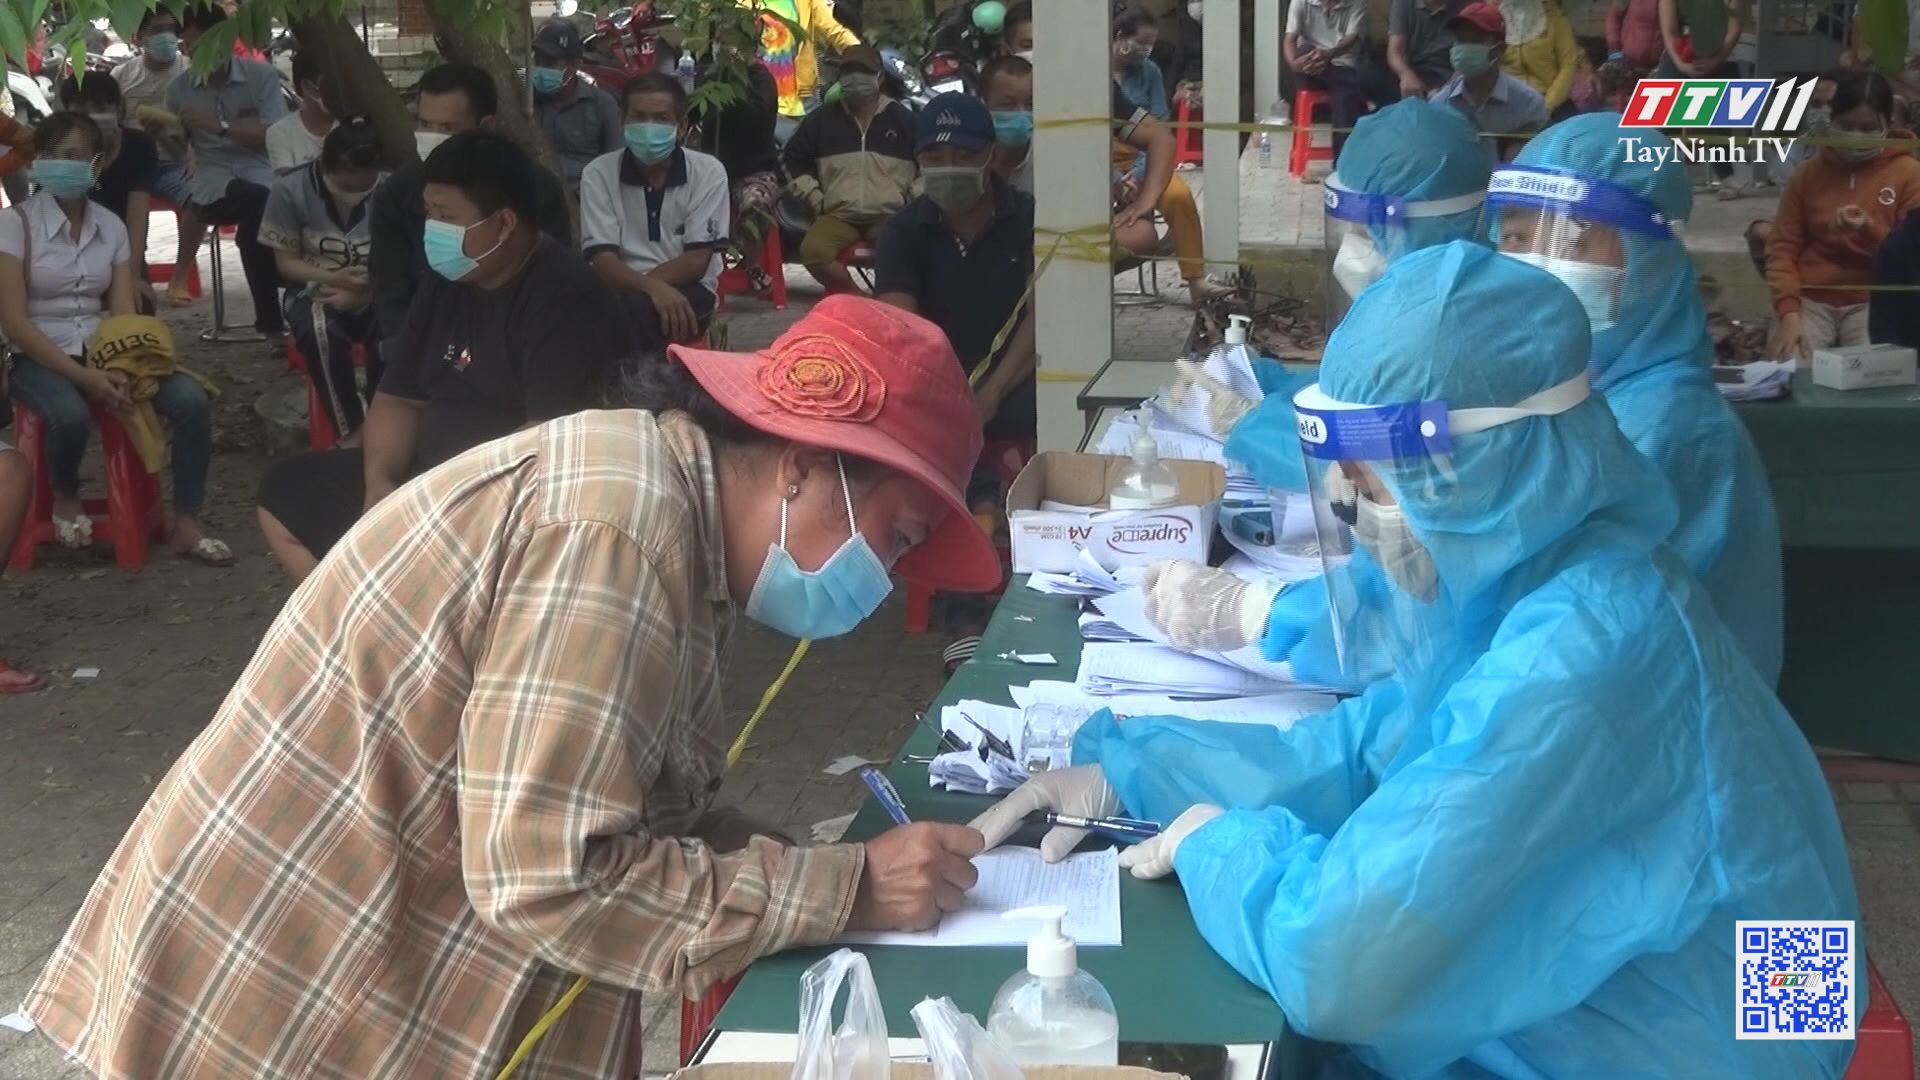 Tây Ninh tiếp tục thực hiện các biện pháp phòng chống dịch COVID-19 | Phòng chống dịch COVID-19 | TayNinhTV